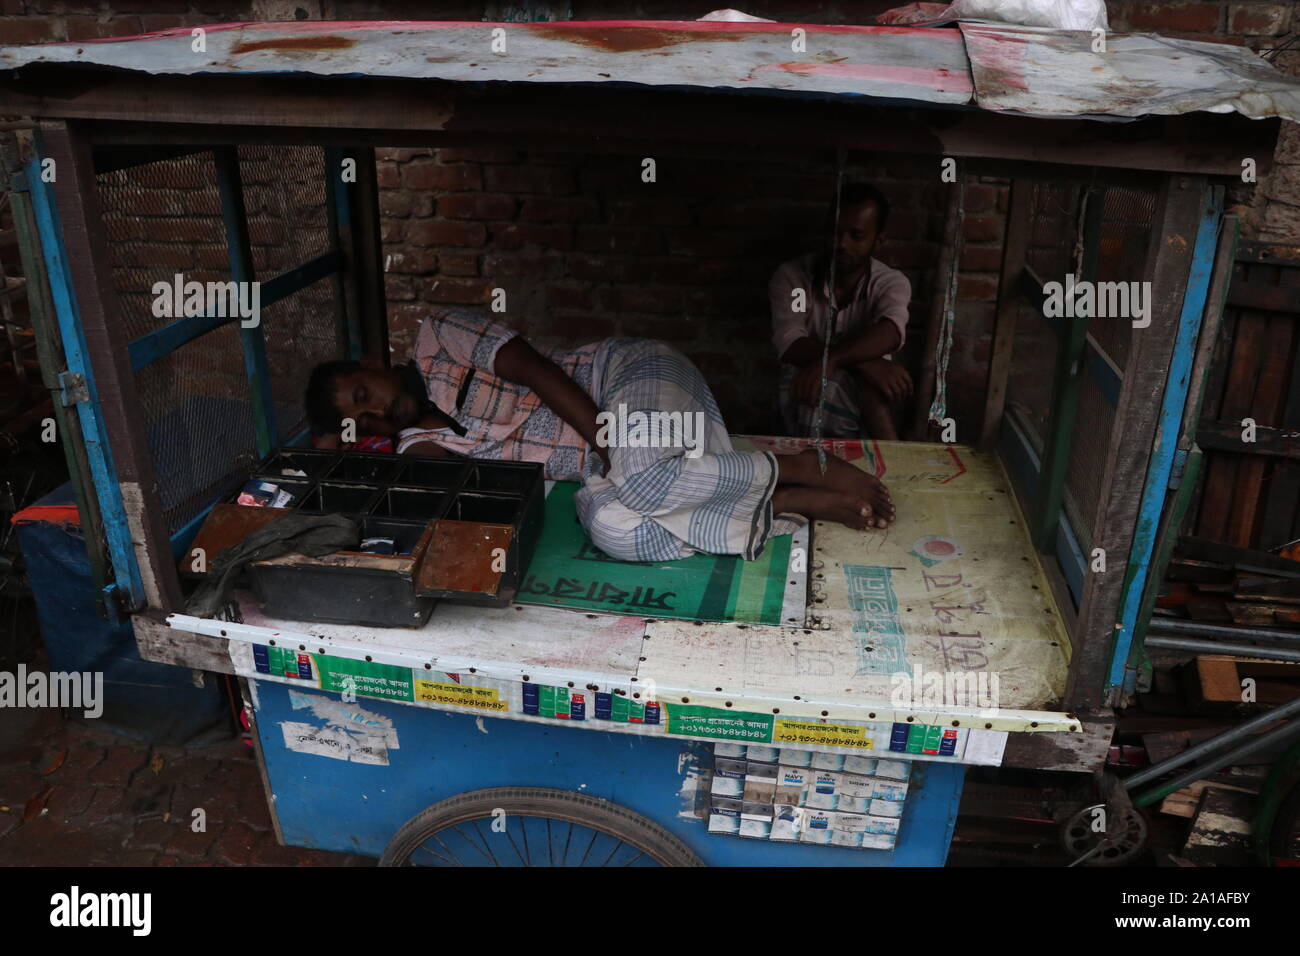 An einem regnerischen Tag, der Ladenbesitzer schläft friedlich © Nazmul Islam/Alamy Stock Foto Stockfoto